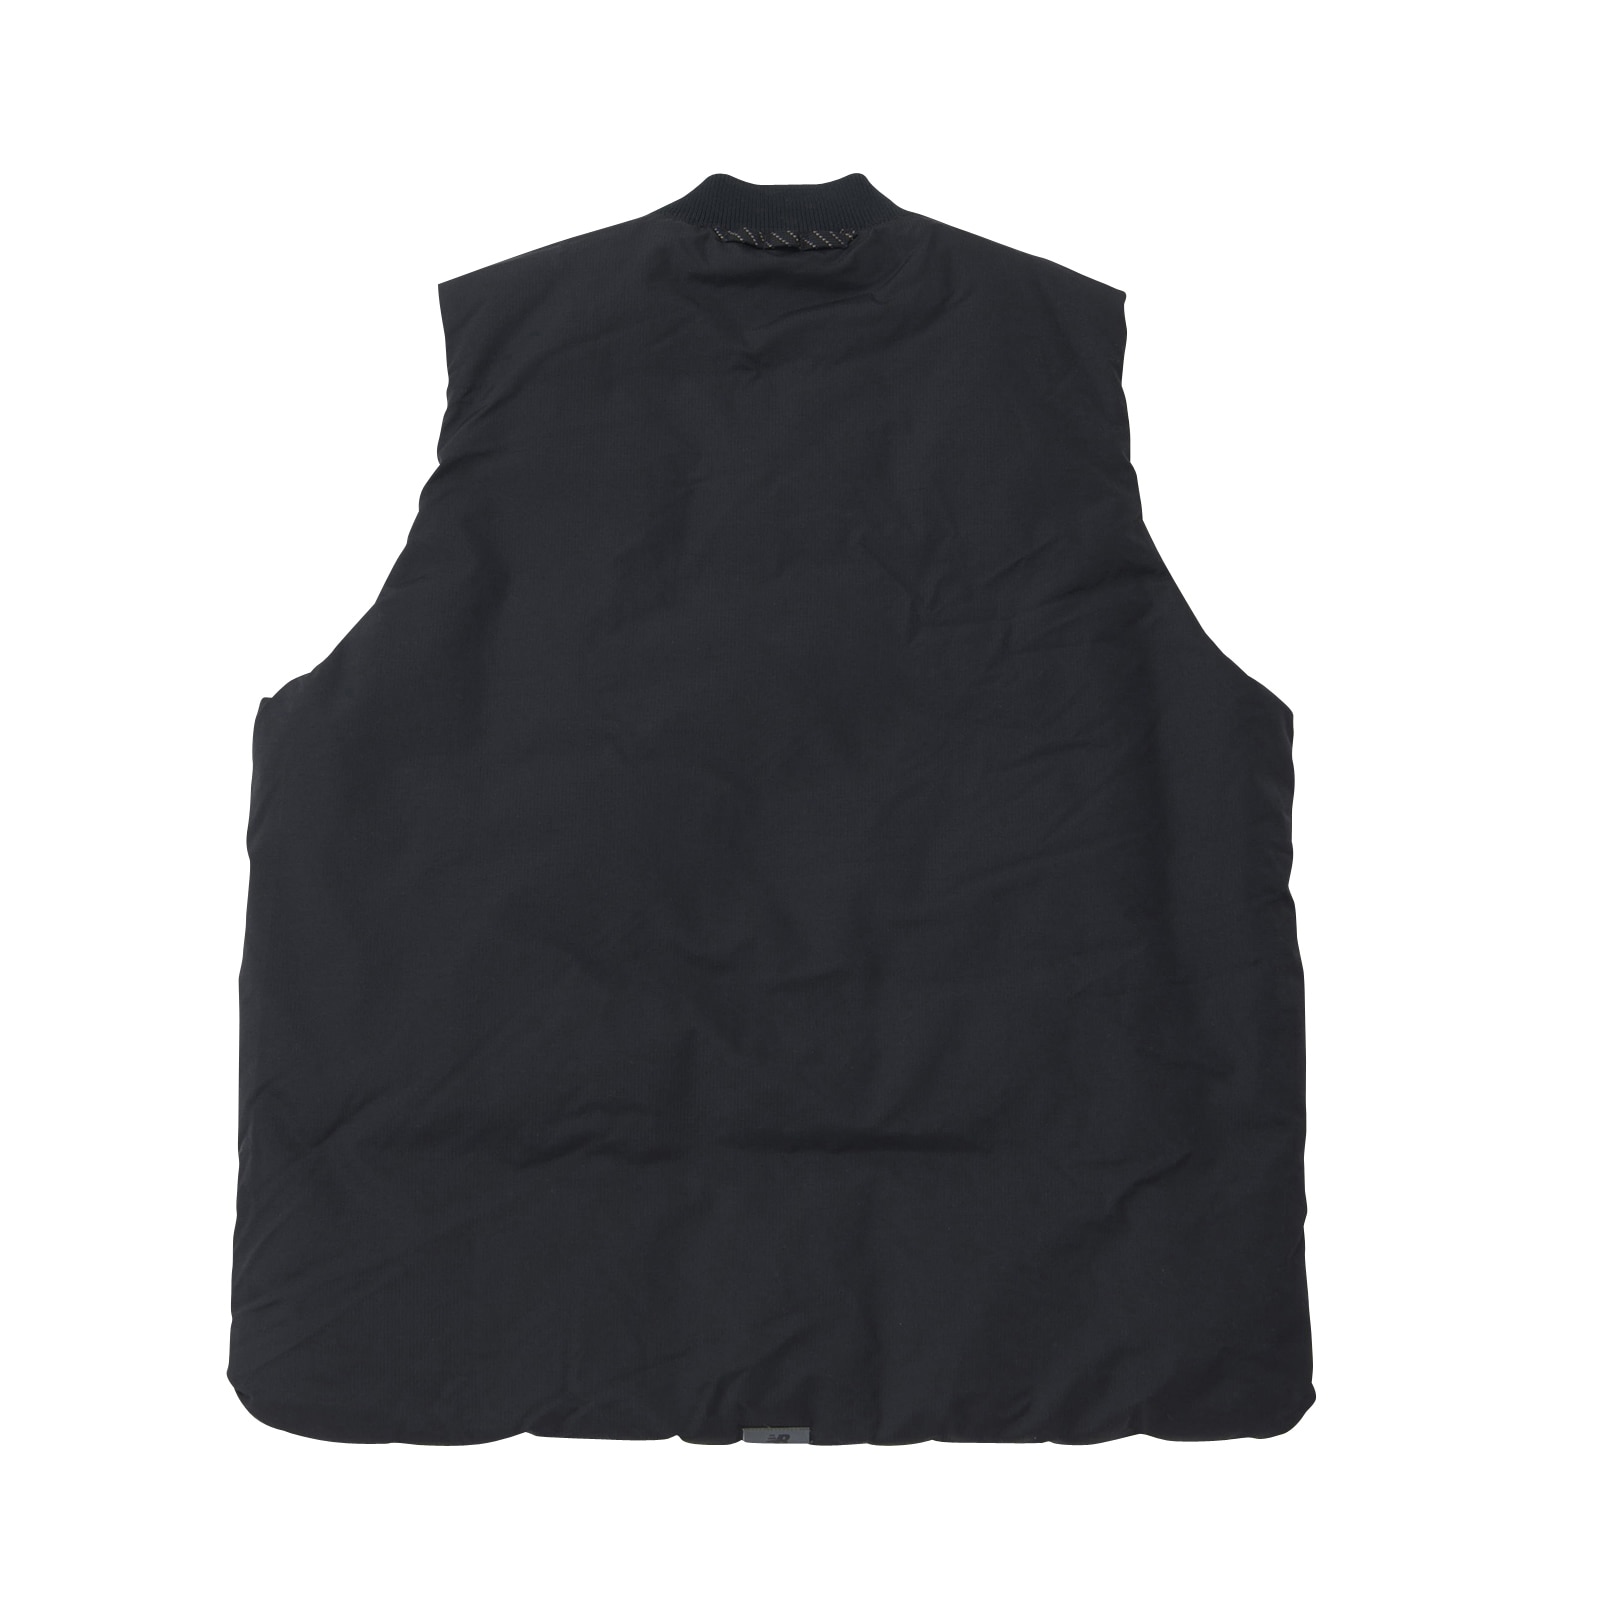 MT1996 Reversible padded vest